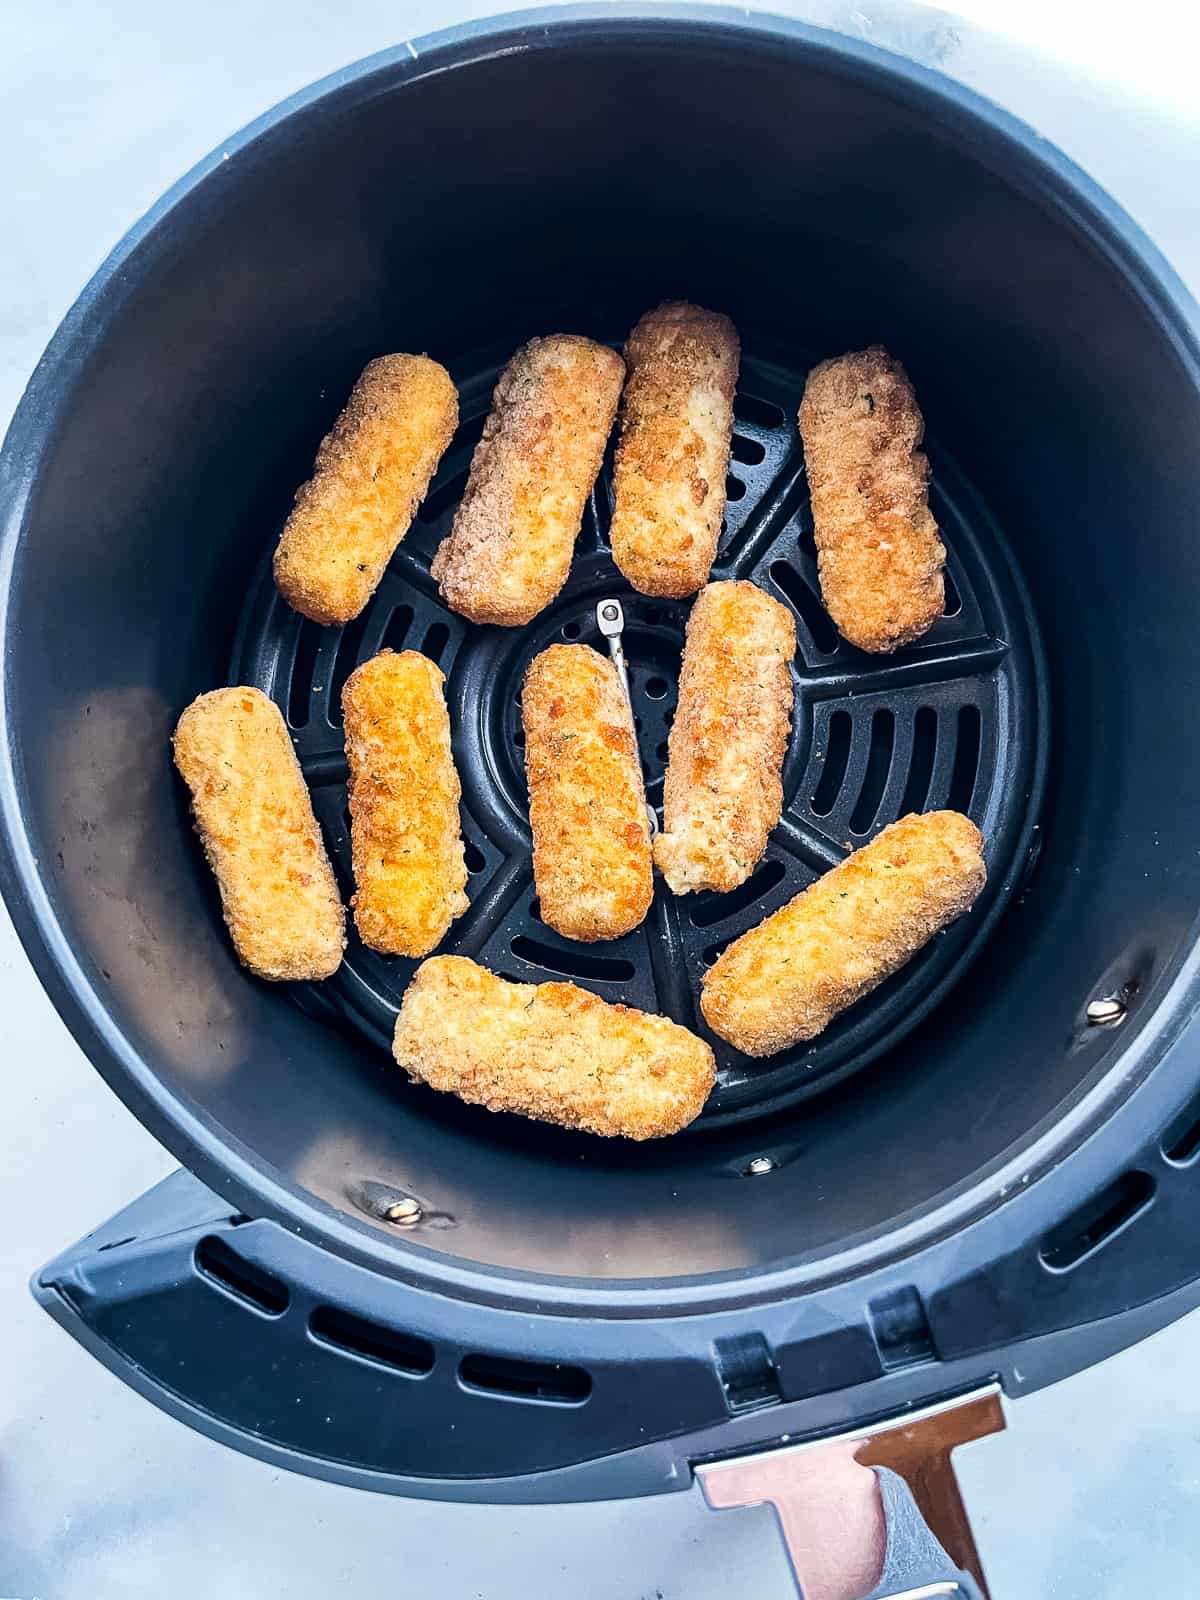 Gluten-free mozzarella sticks in an air fryer basket.